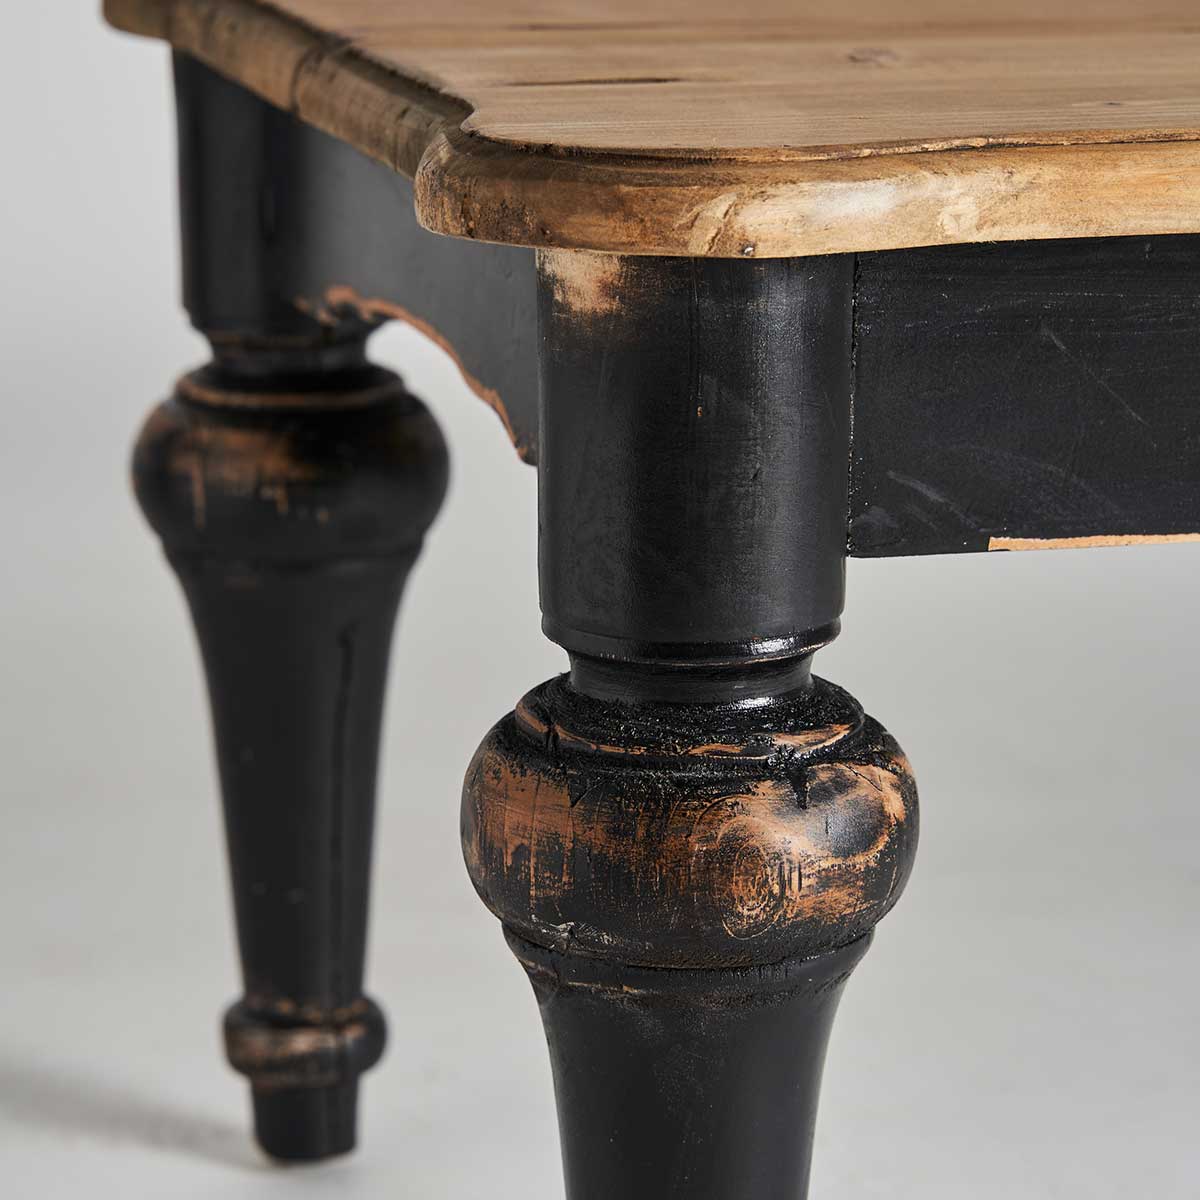 Koloniál stílusú, szilfa dohányzóasztal antikolt fekete lábakkal, natúr asztallappal.